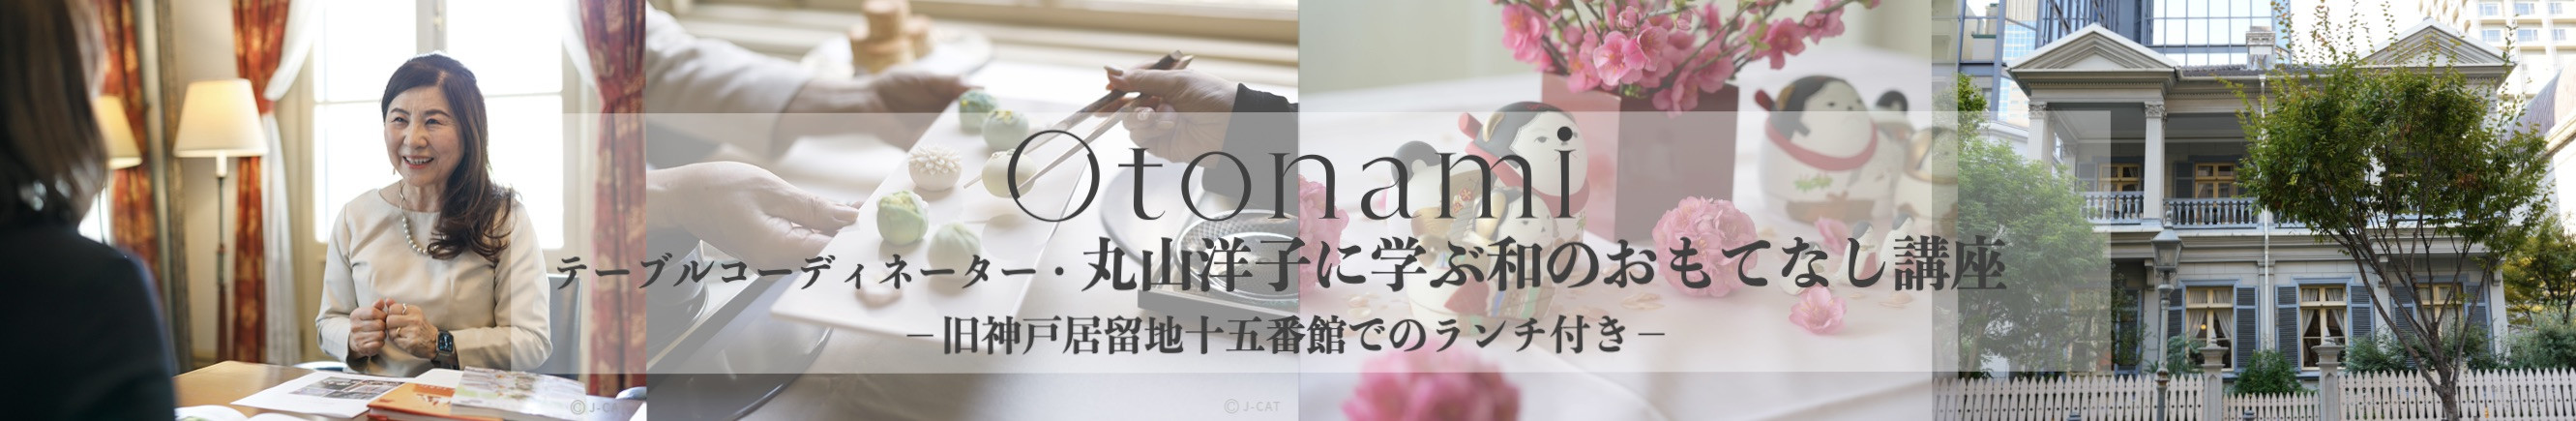 丸山洋子に学ぶ和のおもてなし −旧神戸居留地十五番館でのランチ付き−